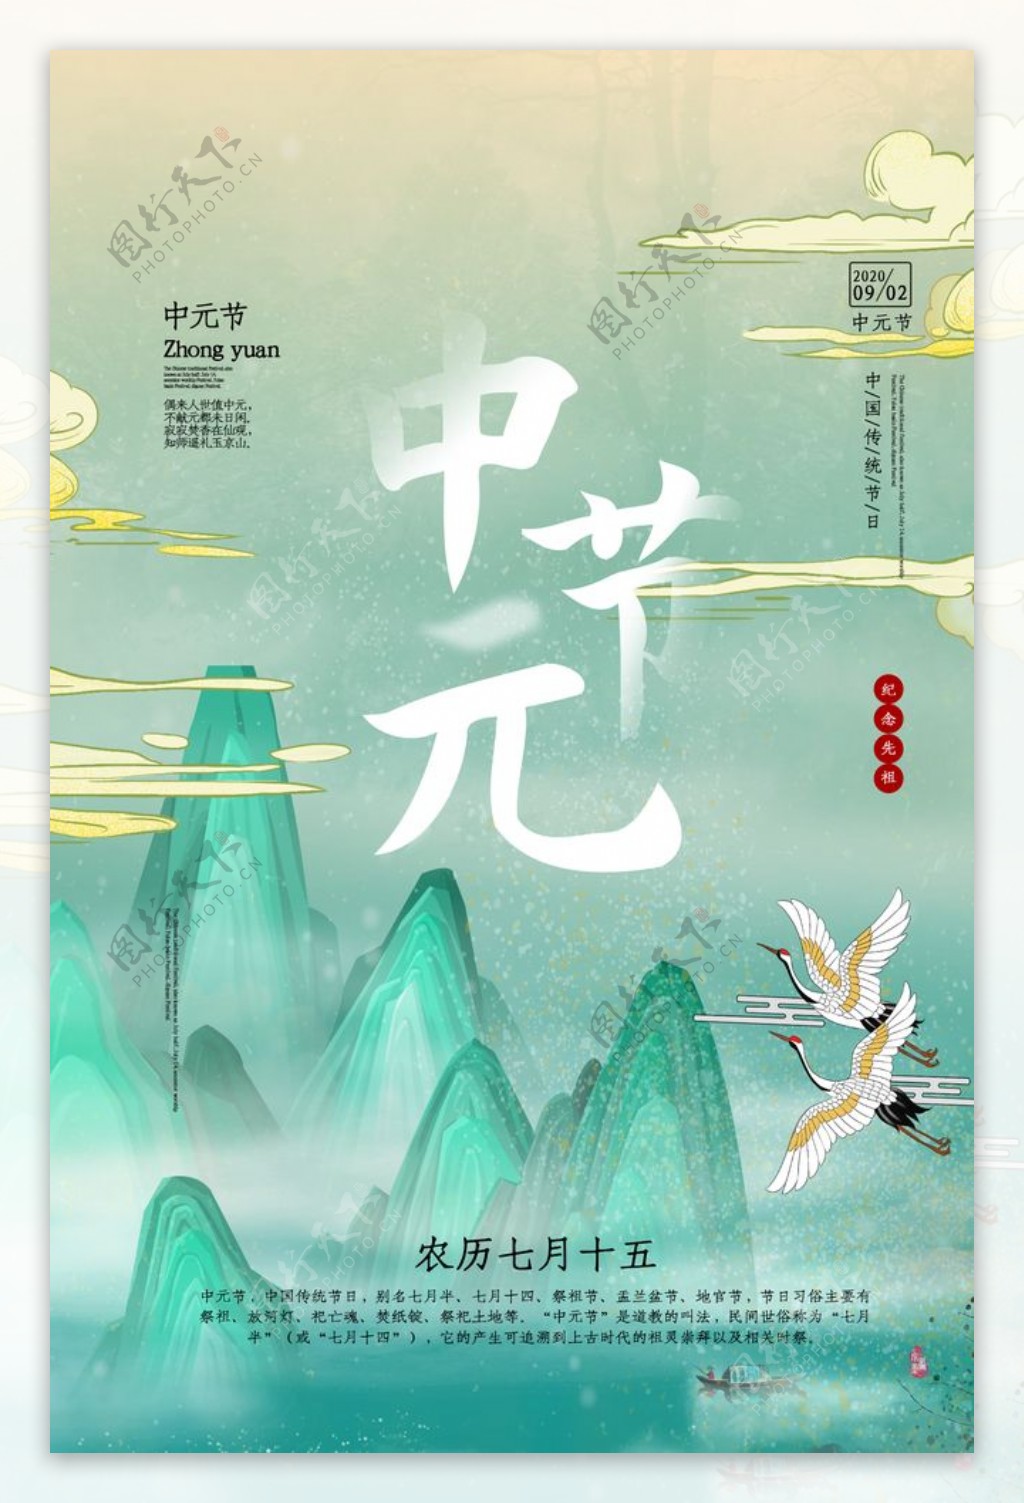 中元节传统节日活动海报素材图片